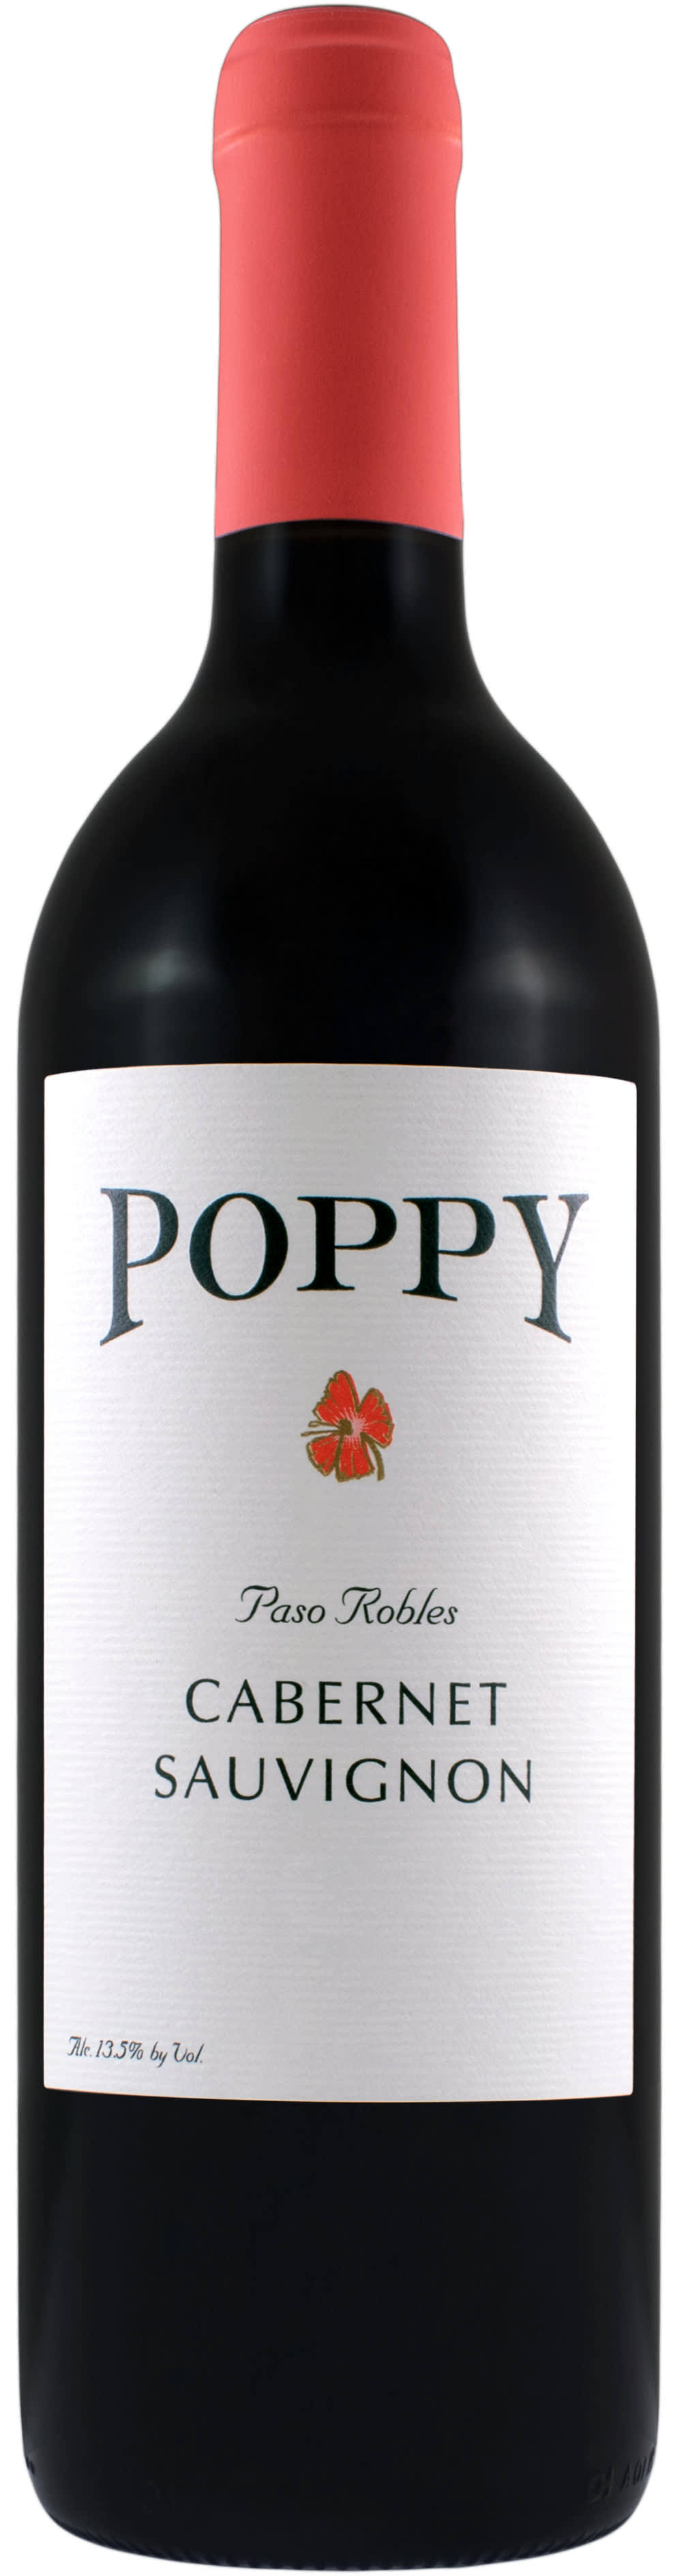 Poppy Cabernet Sauvignon Paso Robles 2012 Red Wine - California, USA